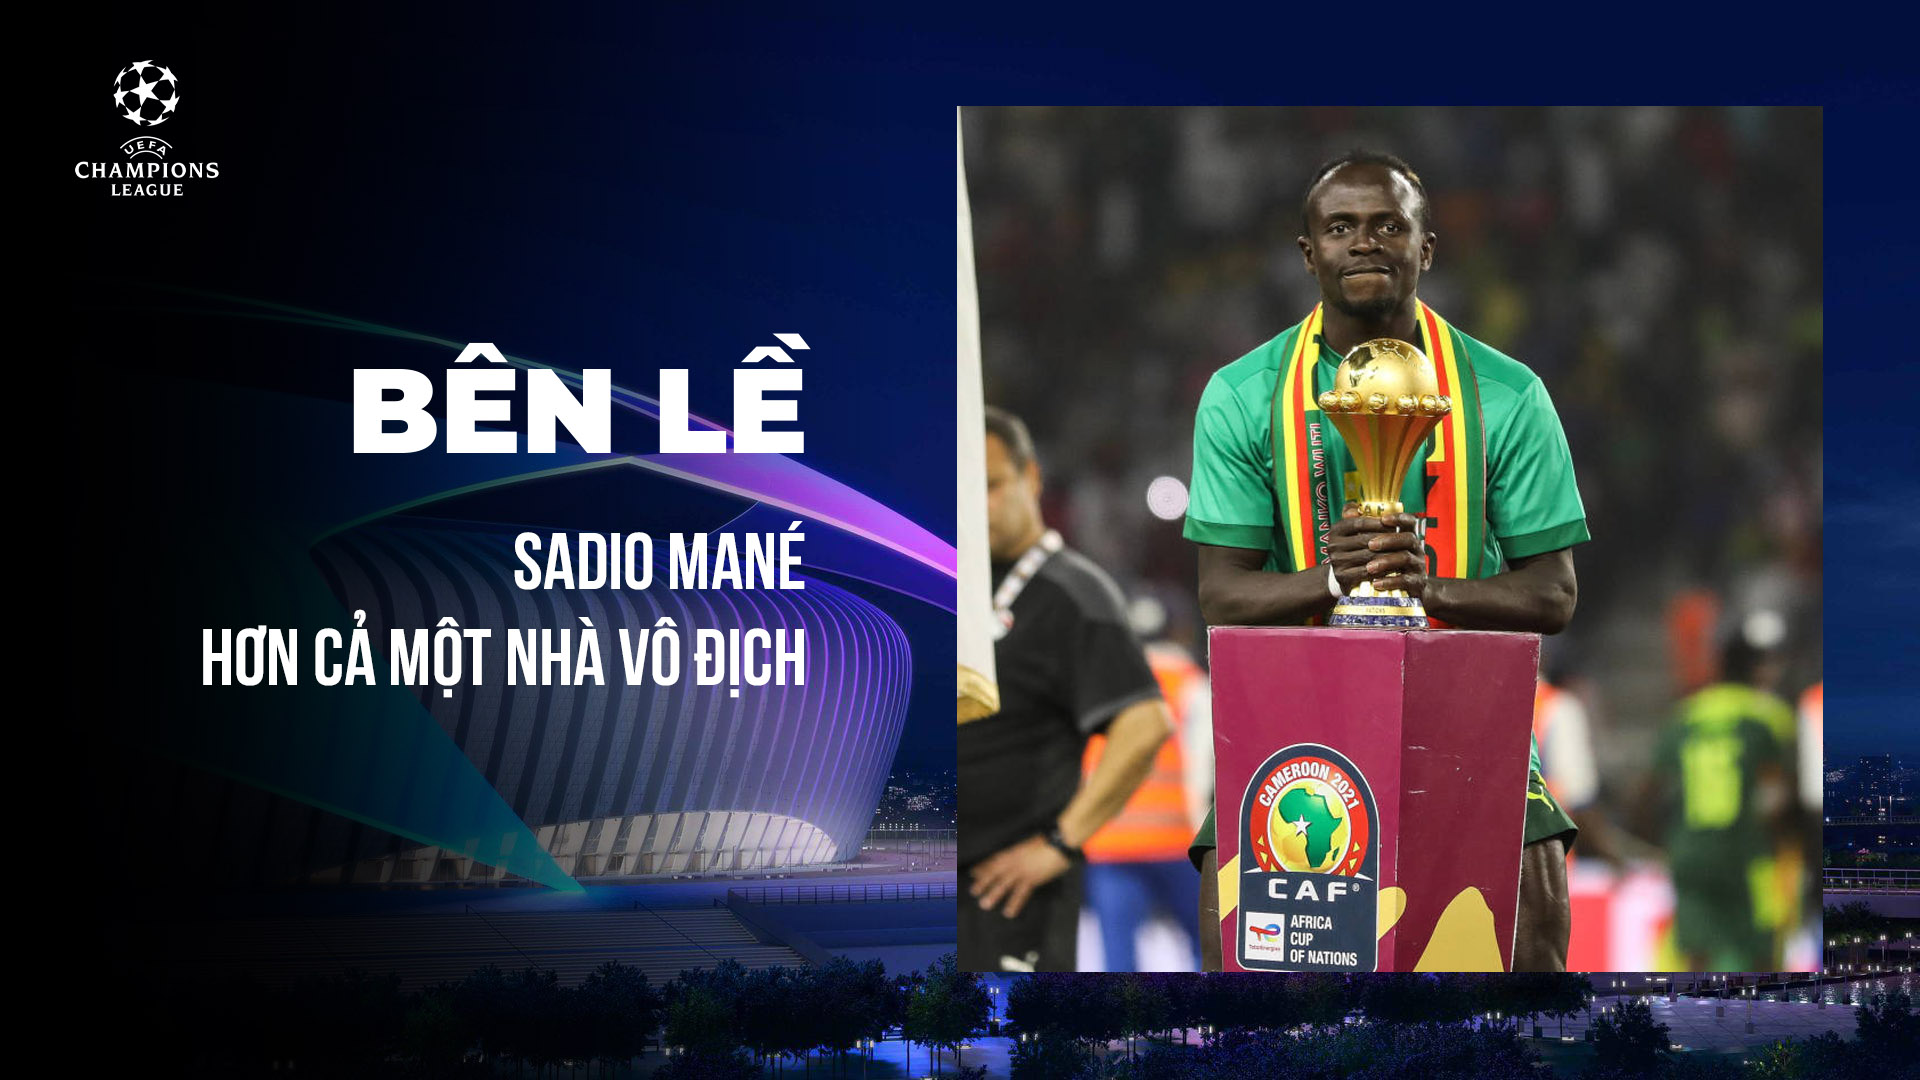 Sadio Mané - Hơn cả một nhà vô địch - UEFA Champions League